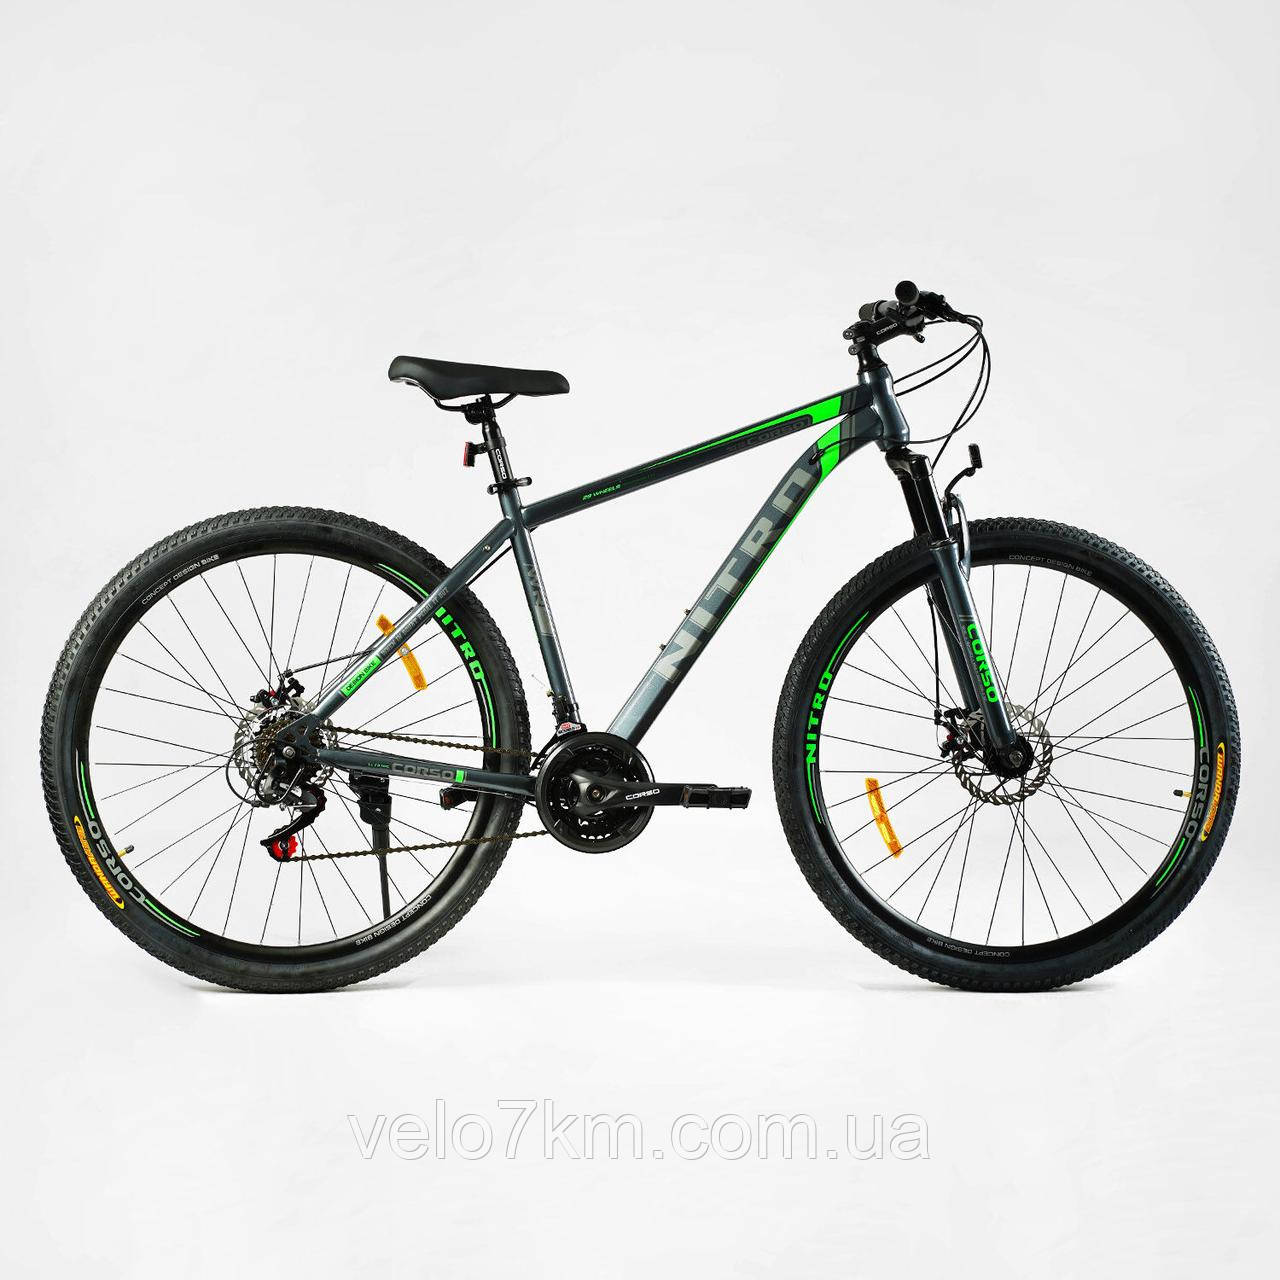 Спортивний велосипед Corso Nitro 29" сталева рама 17" обладнання SunRun 21 швидкість, зібраний на 75%